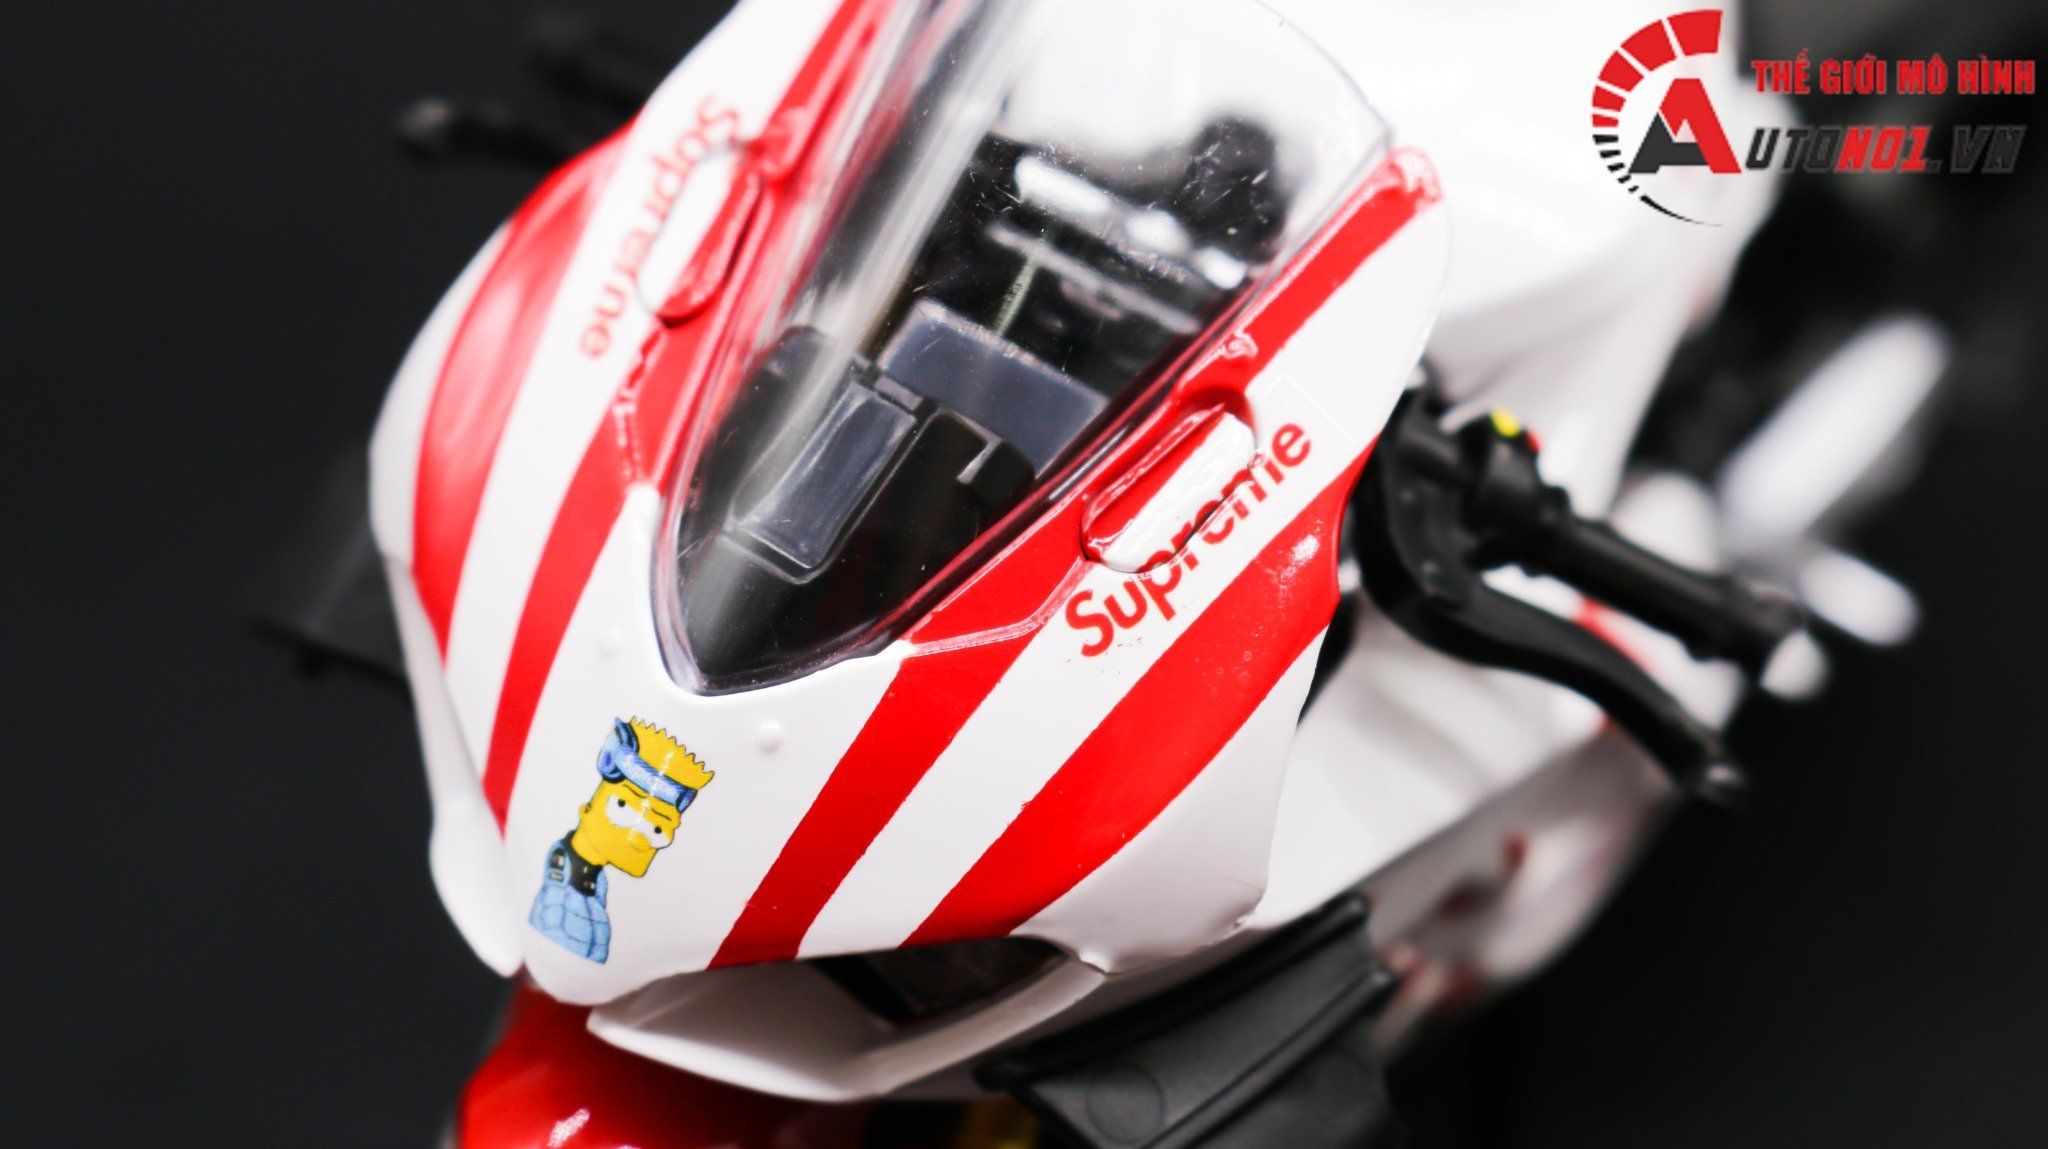  Mô hình xe độ Ducati Supreme V4s Nồi Khô White Tỉ Lệ 1:12 Autono1 D223F 